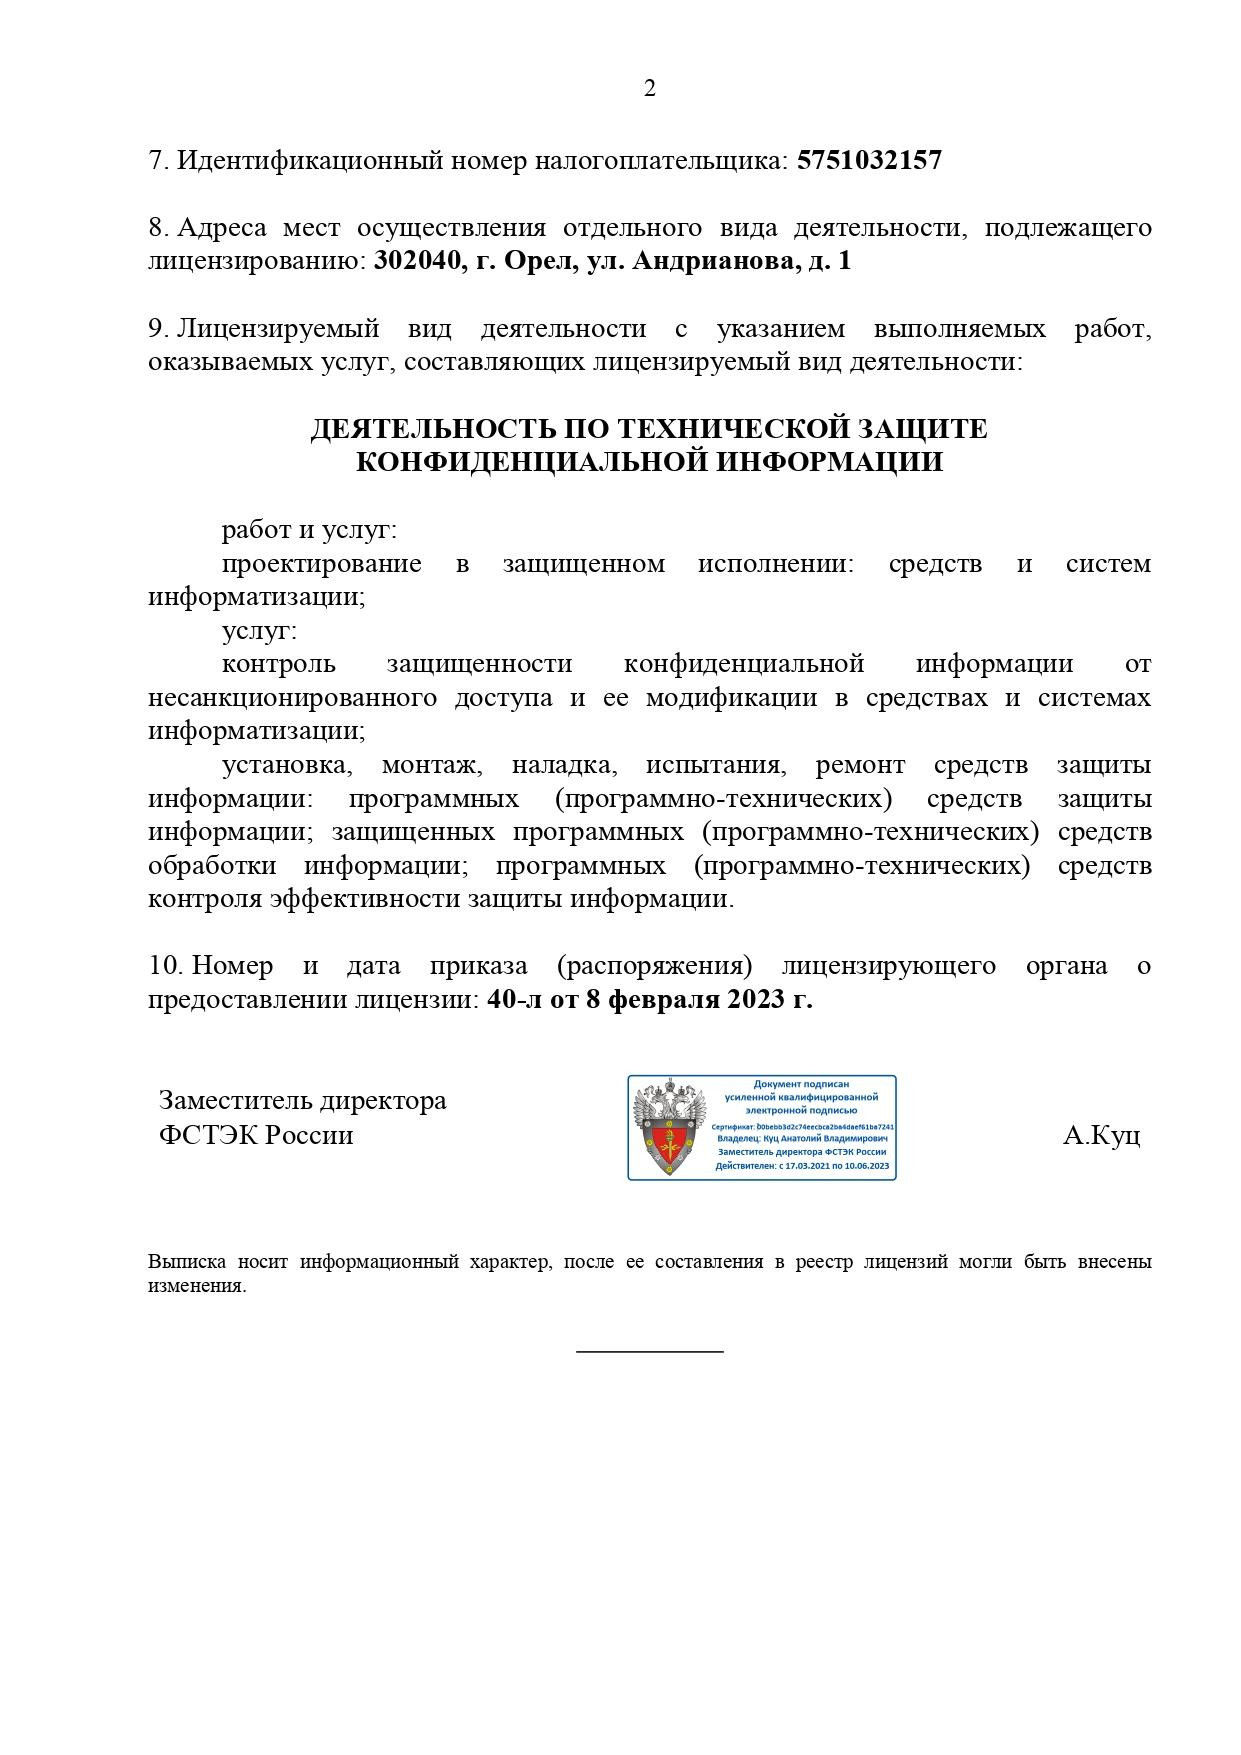 Лицензия ФСТЭК России №ЛО24-00107-77/00640417